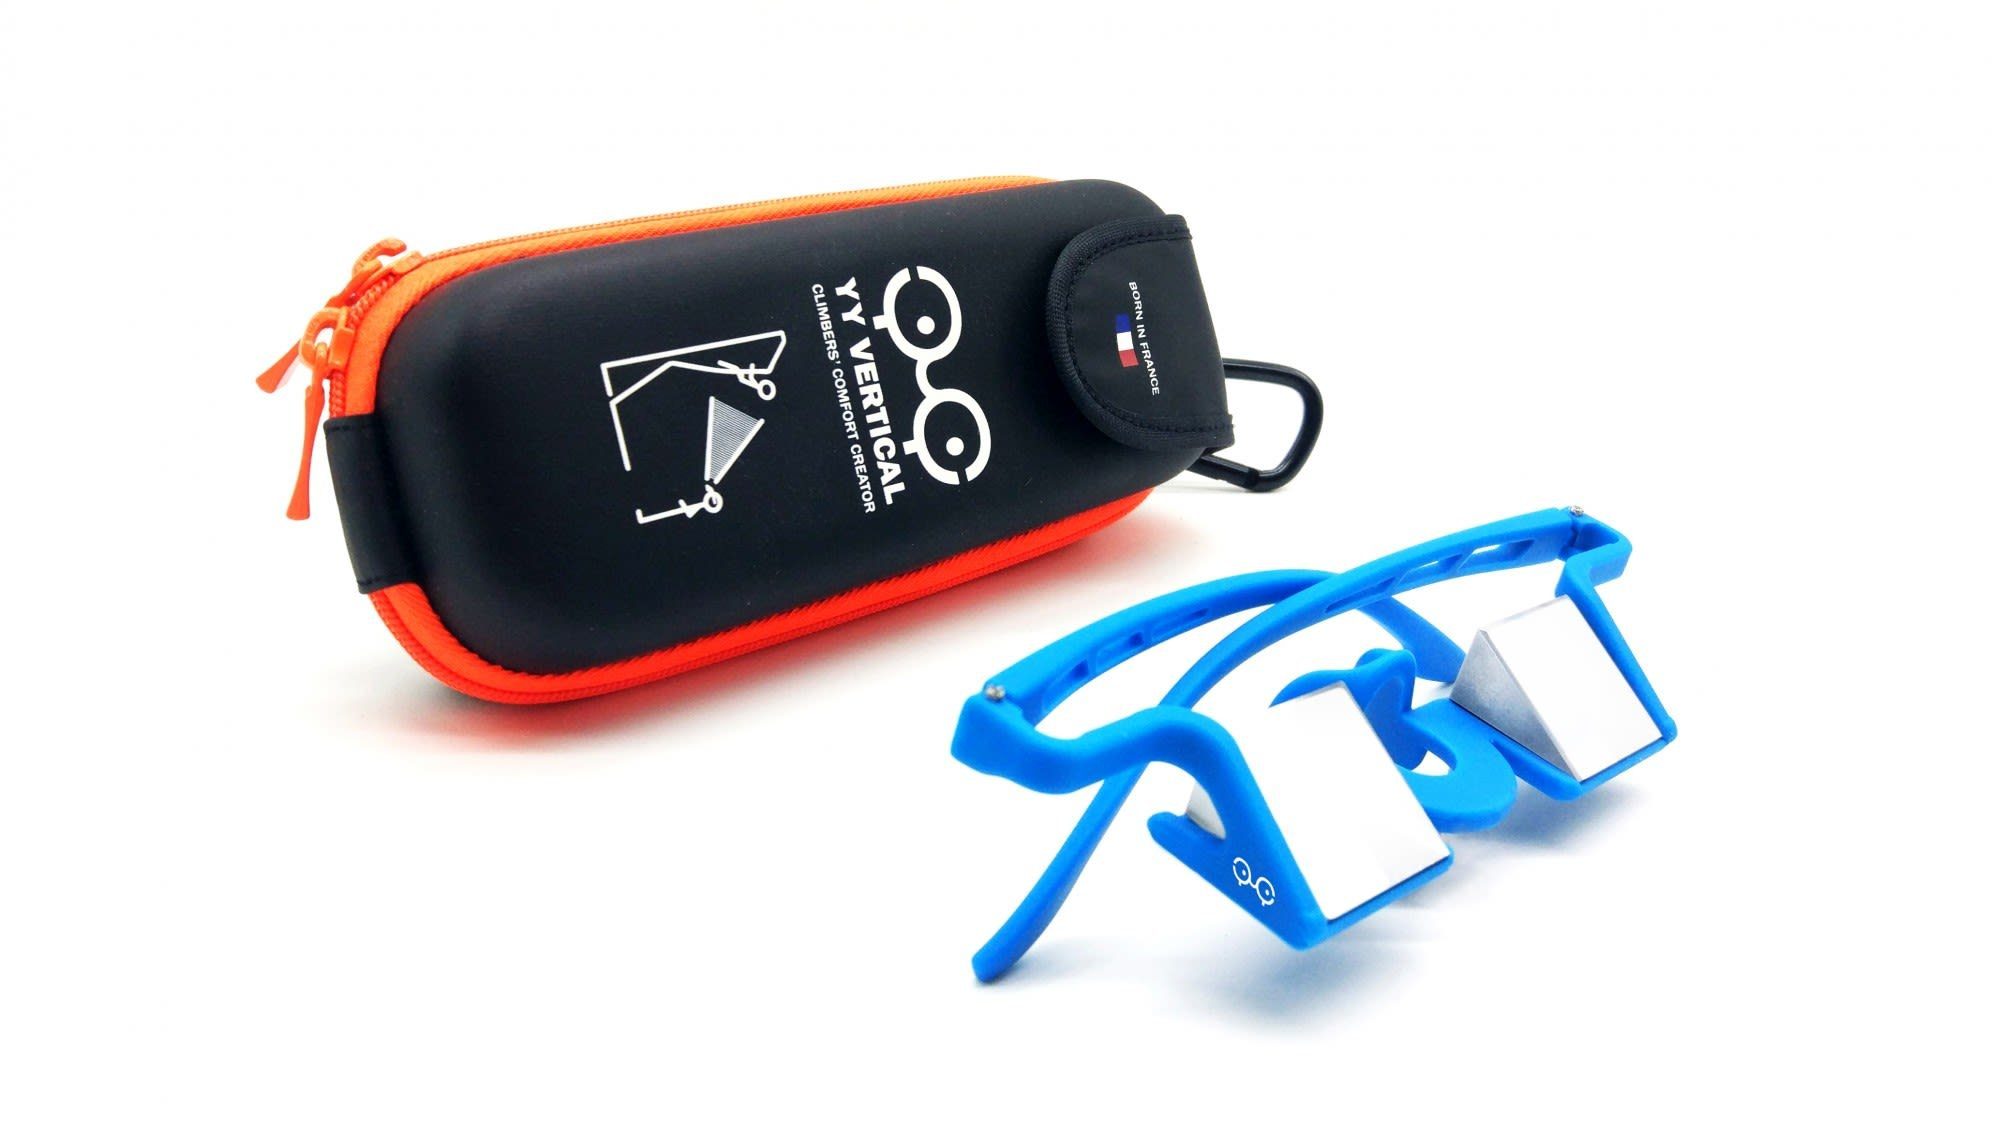 Evo Sicherungsbrille Vertical Yy Vertical Kletter-Trainingsgerät Blue Plasfun Y&Y